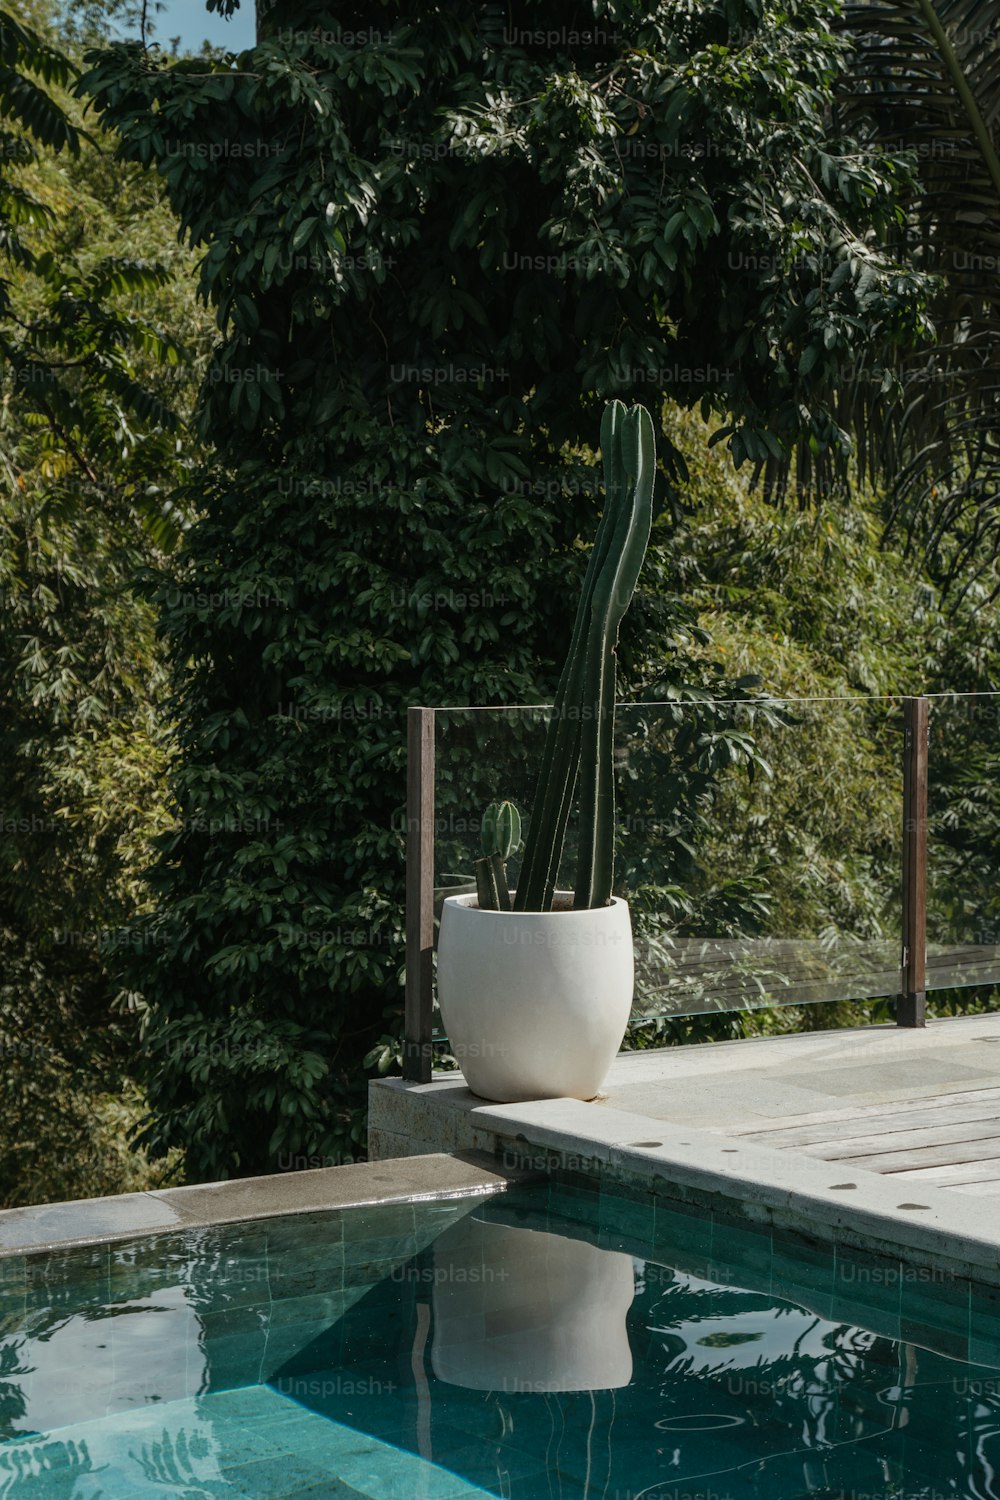 Ein großer Kaktus in einem weißen Topf neben einem Pool